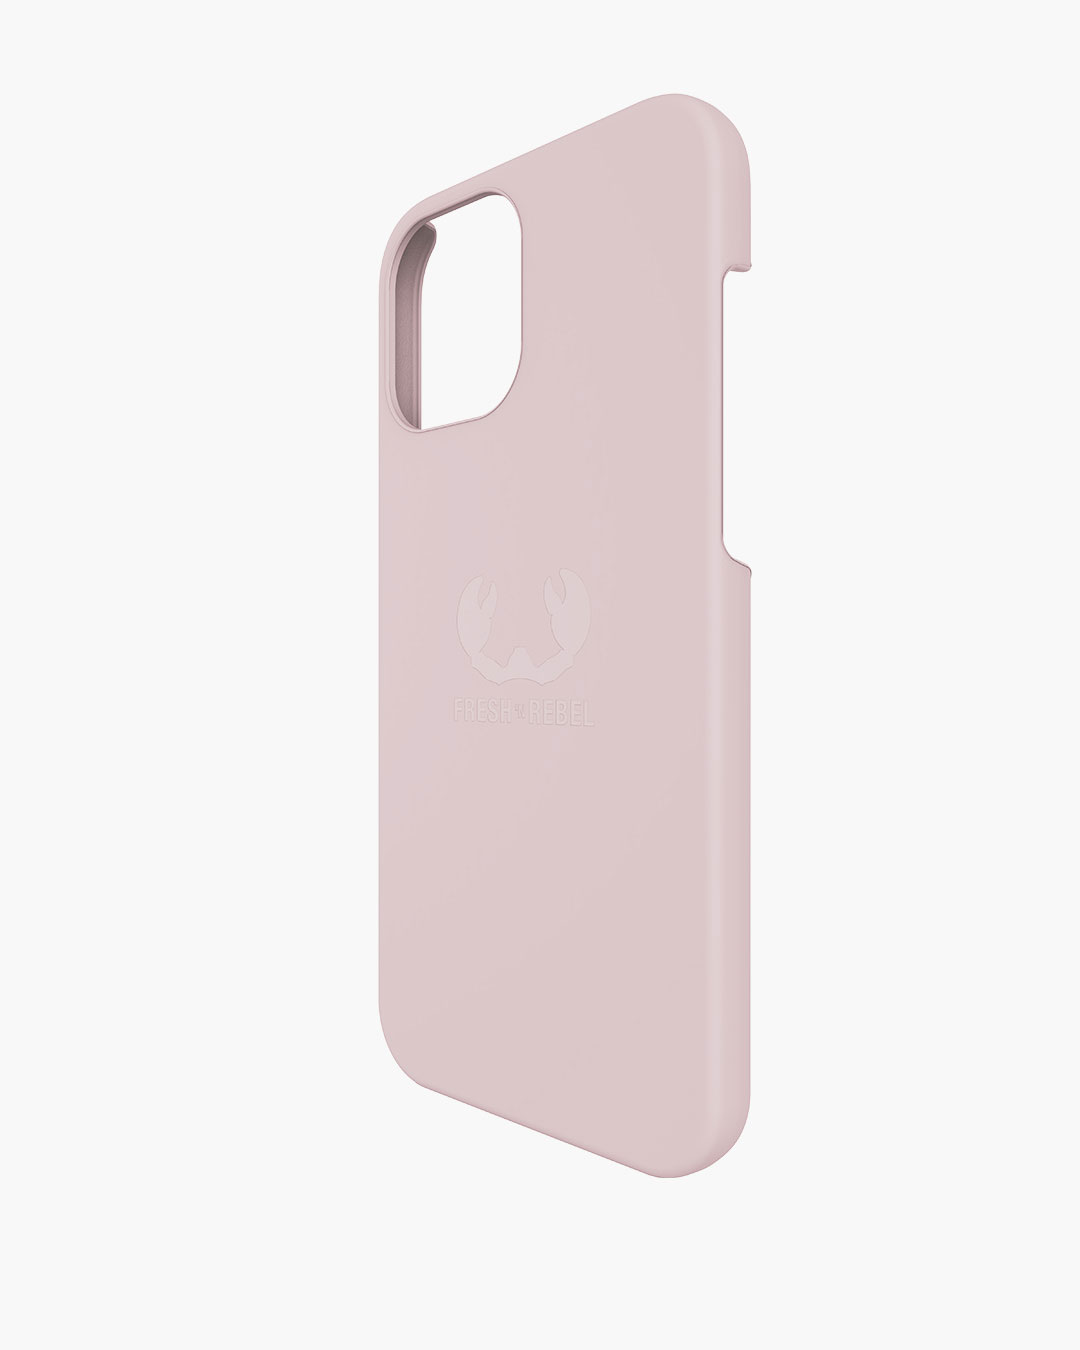 Fresh 'n Rebel - Phone Case iPhone 12 Pro Max - Smokey Pink